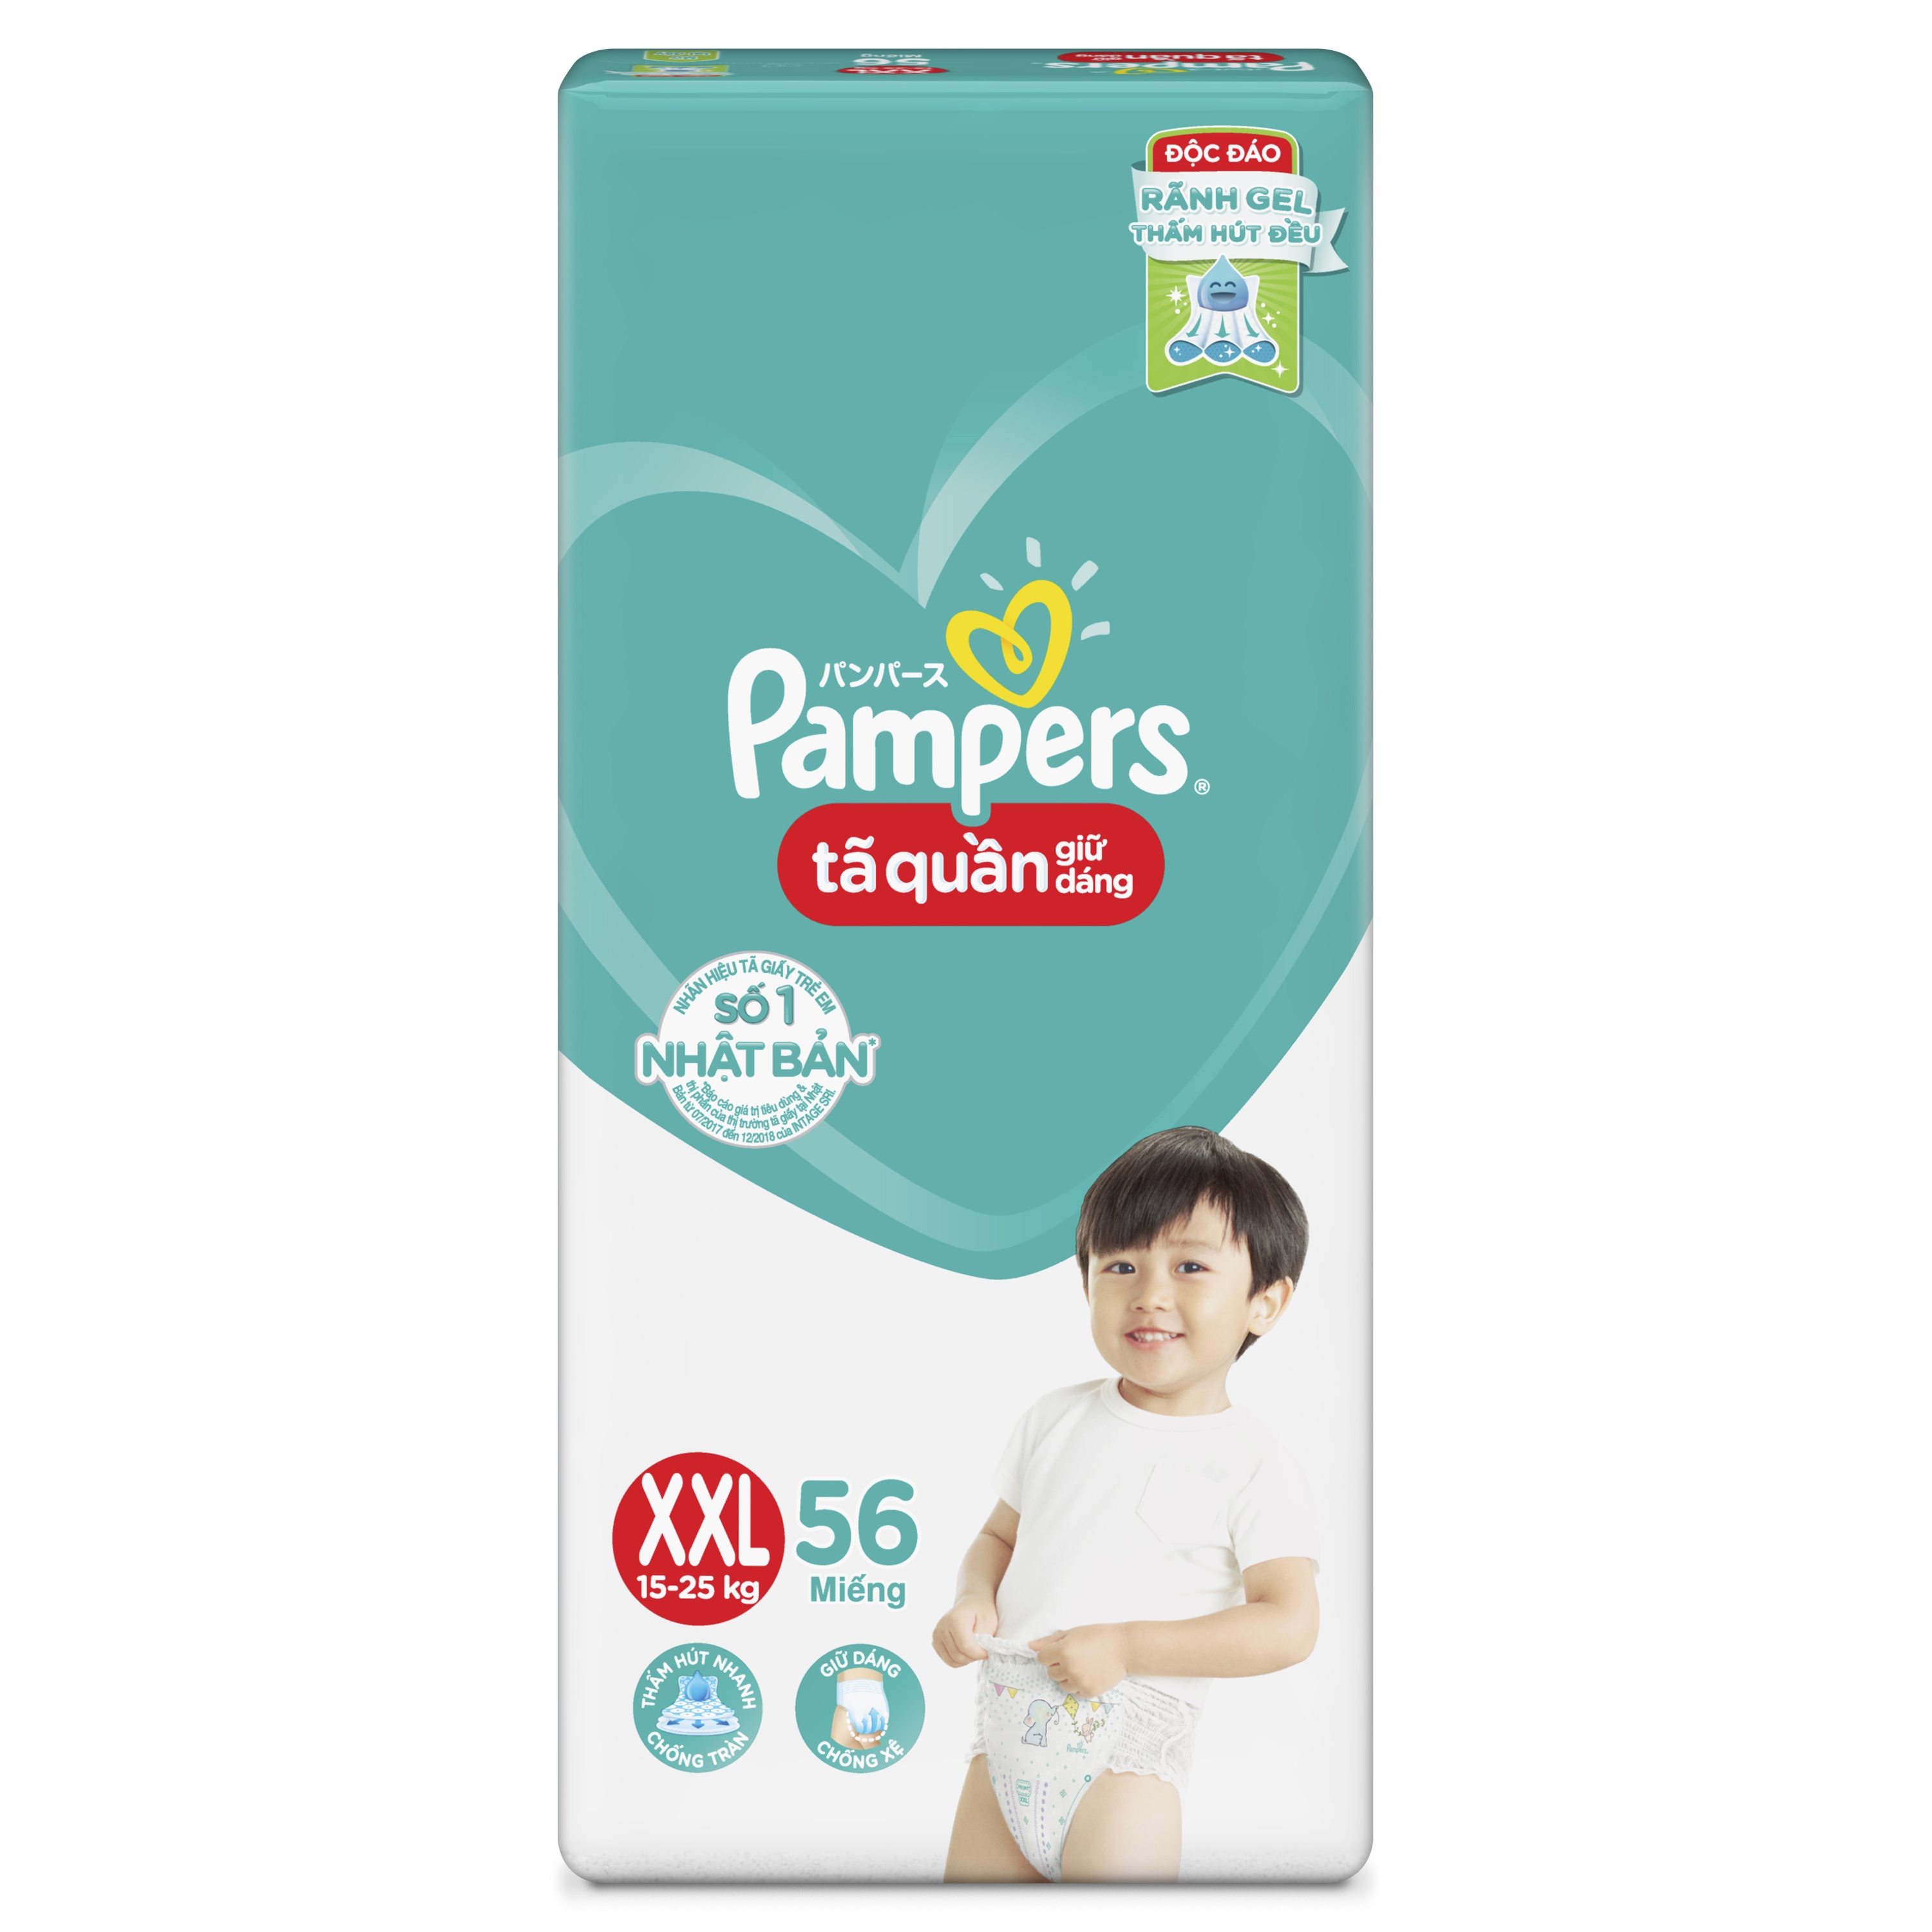 Pampers Diaper Pants - New Born - Buy 66 Pampers Pant Diapers | Flipkart.com